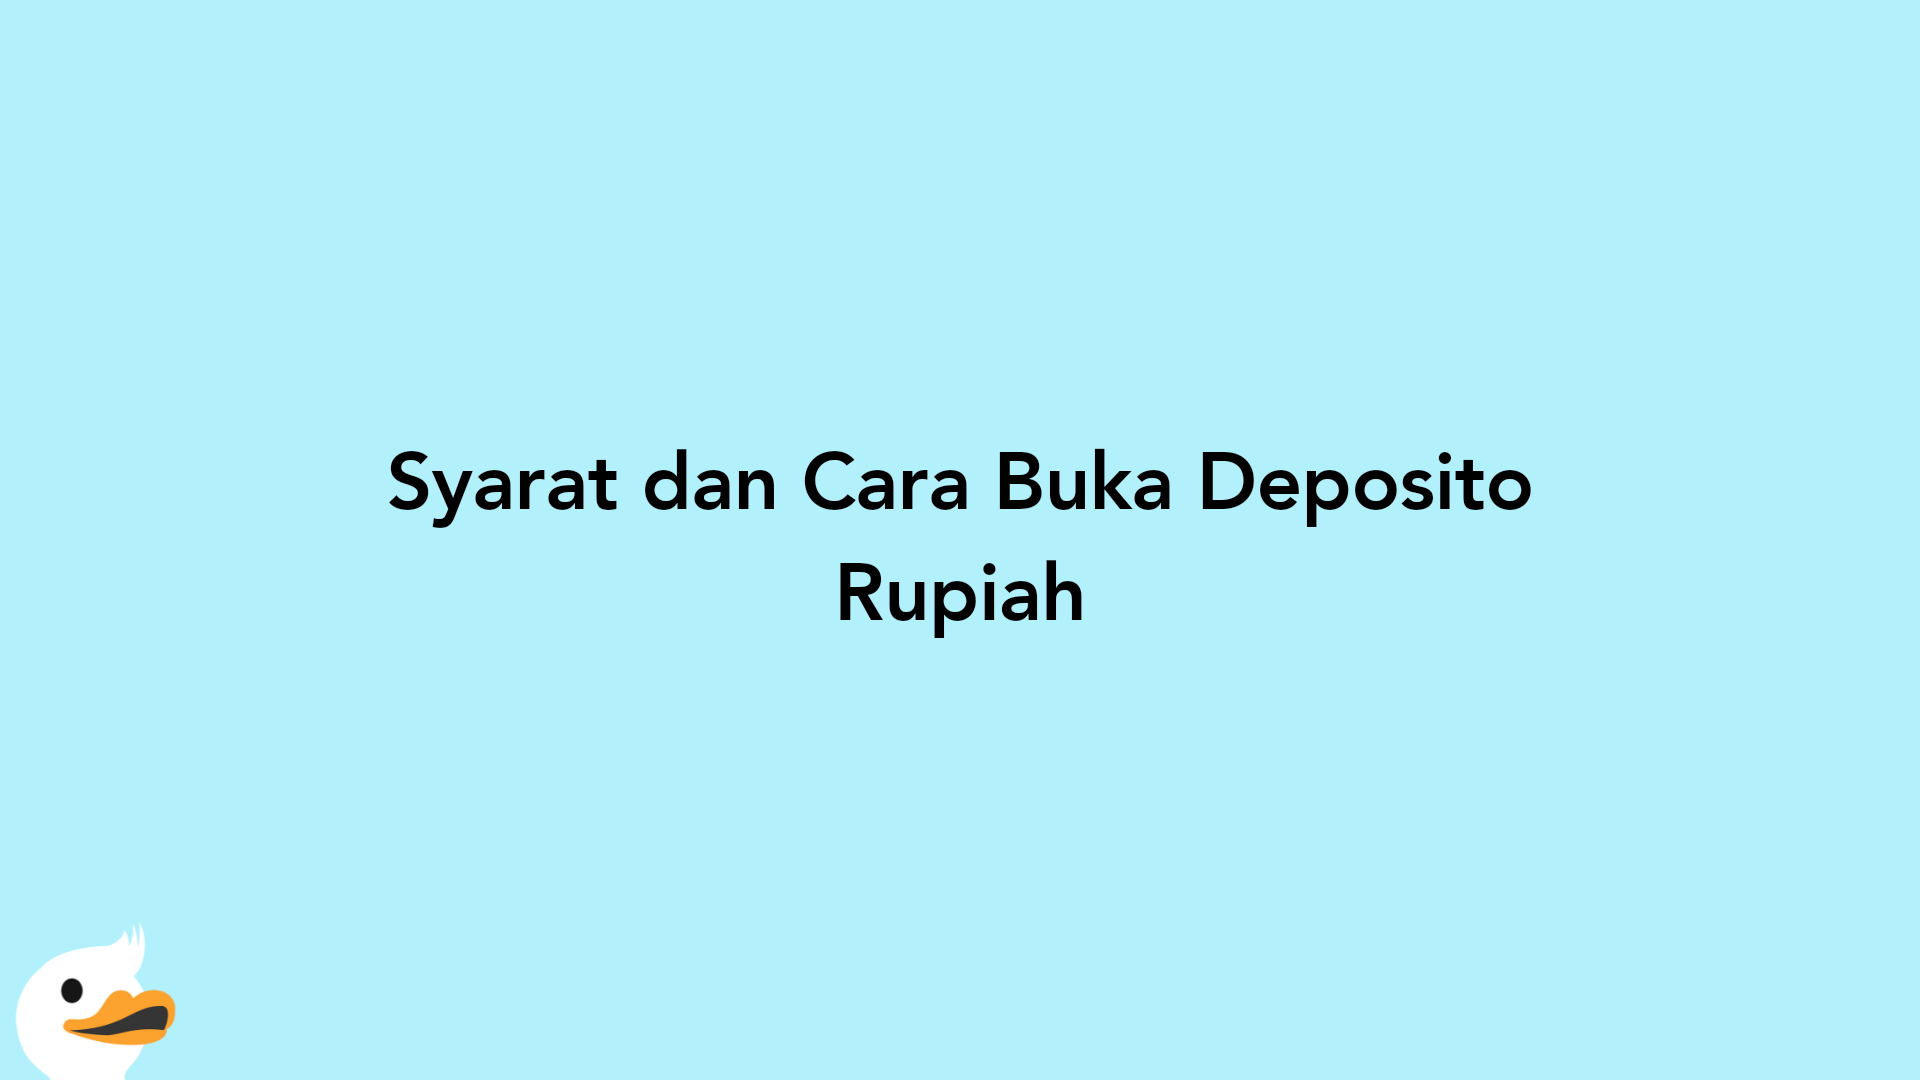 Syarat dan Cara Buka Deposito Rupiah